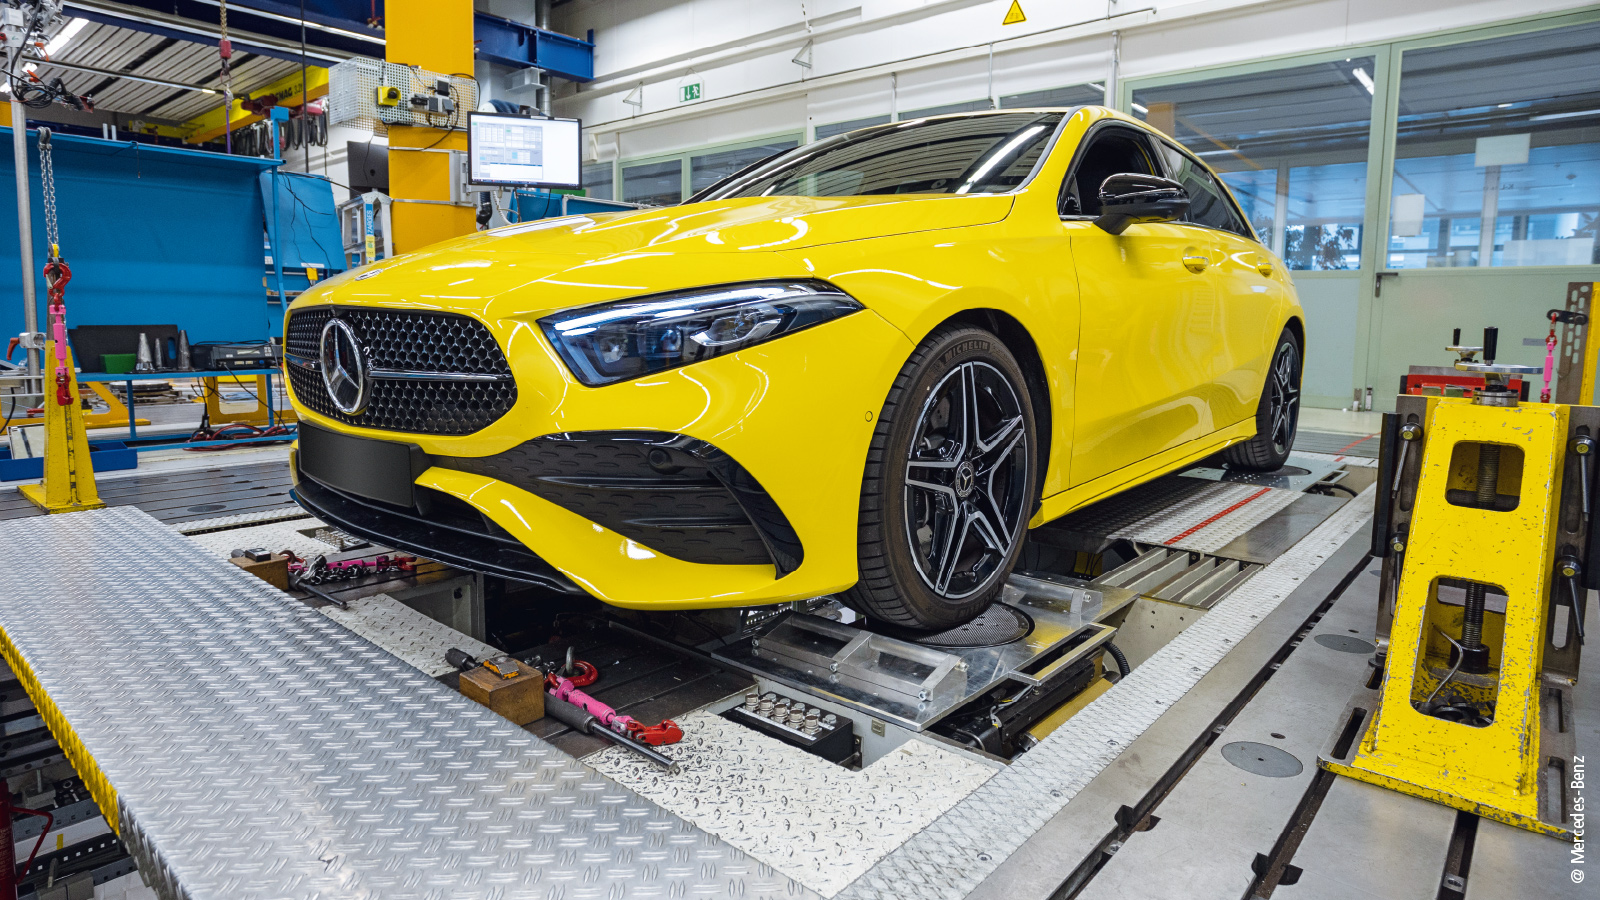 Auf mehreren Prüfständen analysiert und optimiert Mercedes-Benz mithilfe von Präzisionsmesstechnikklemmen der ELM-Serie und der Software TwinCAT die fahrdynamischen Eigenschaften kommender Fahrzeuggenerationen.